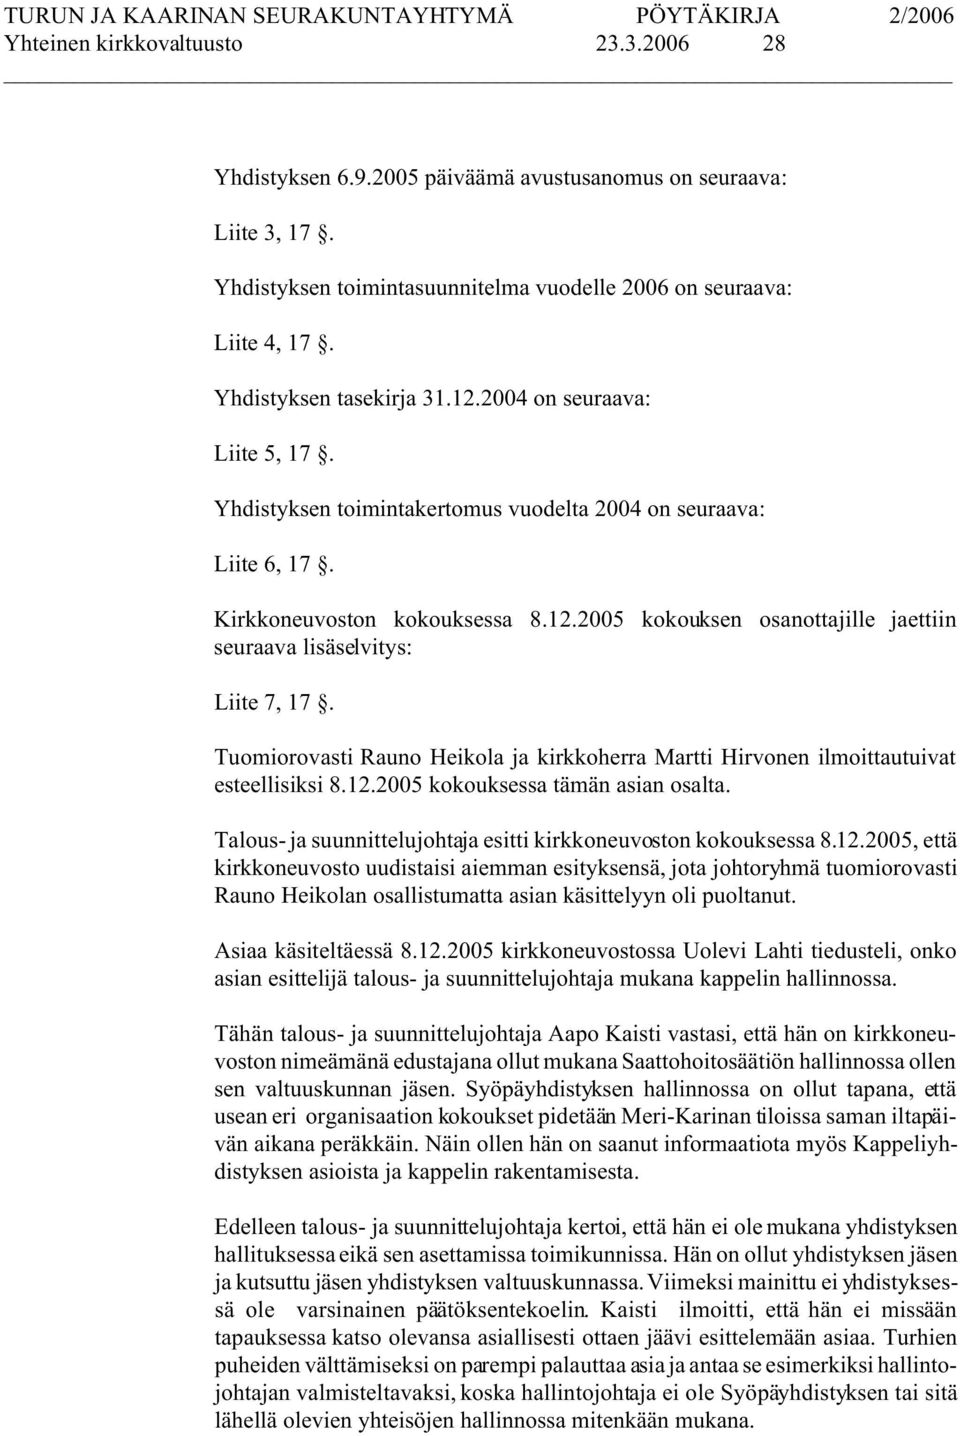 Tuomiorovasti Rauno Heikola ja kirkkoherra Martti Hirvonen ilmoittautuivat esteellisiksi 8.12.2005 kokouksessa tämän asian osalta. Talous- ja suunnittelujohtaja esitti kirkkoneuvoston kokouksessa 8.